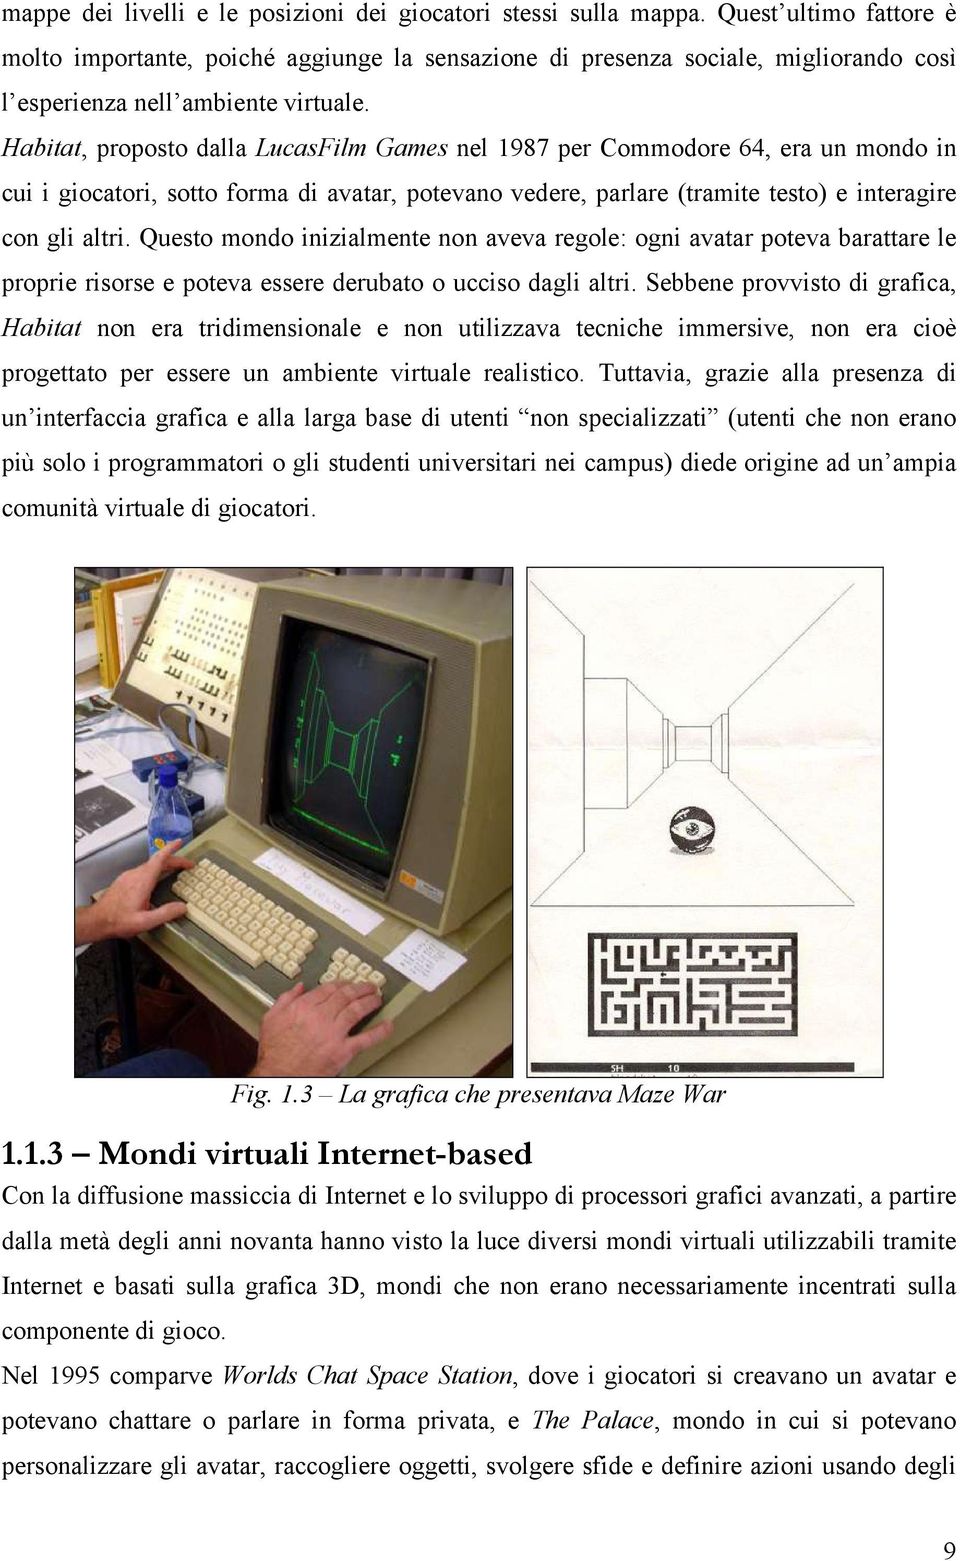 Habitat, proposto dalla LucasFilm Games nel 1987 per Commodore 64, era un mondo in cui i giocatori, sotto forma di avatar, potevano vedere, parlare (tramite testo) e interagire con gli altri.